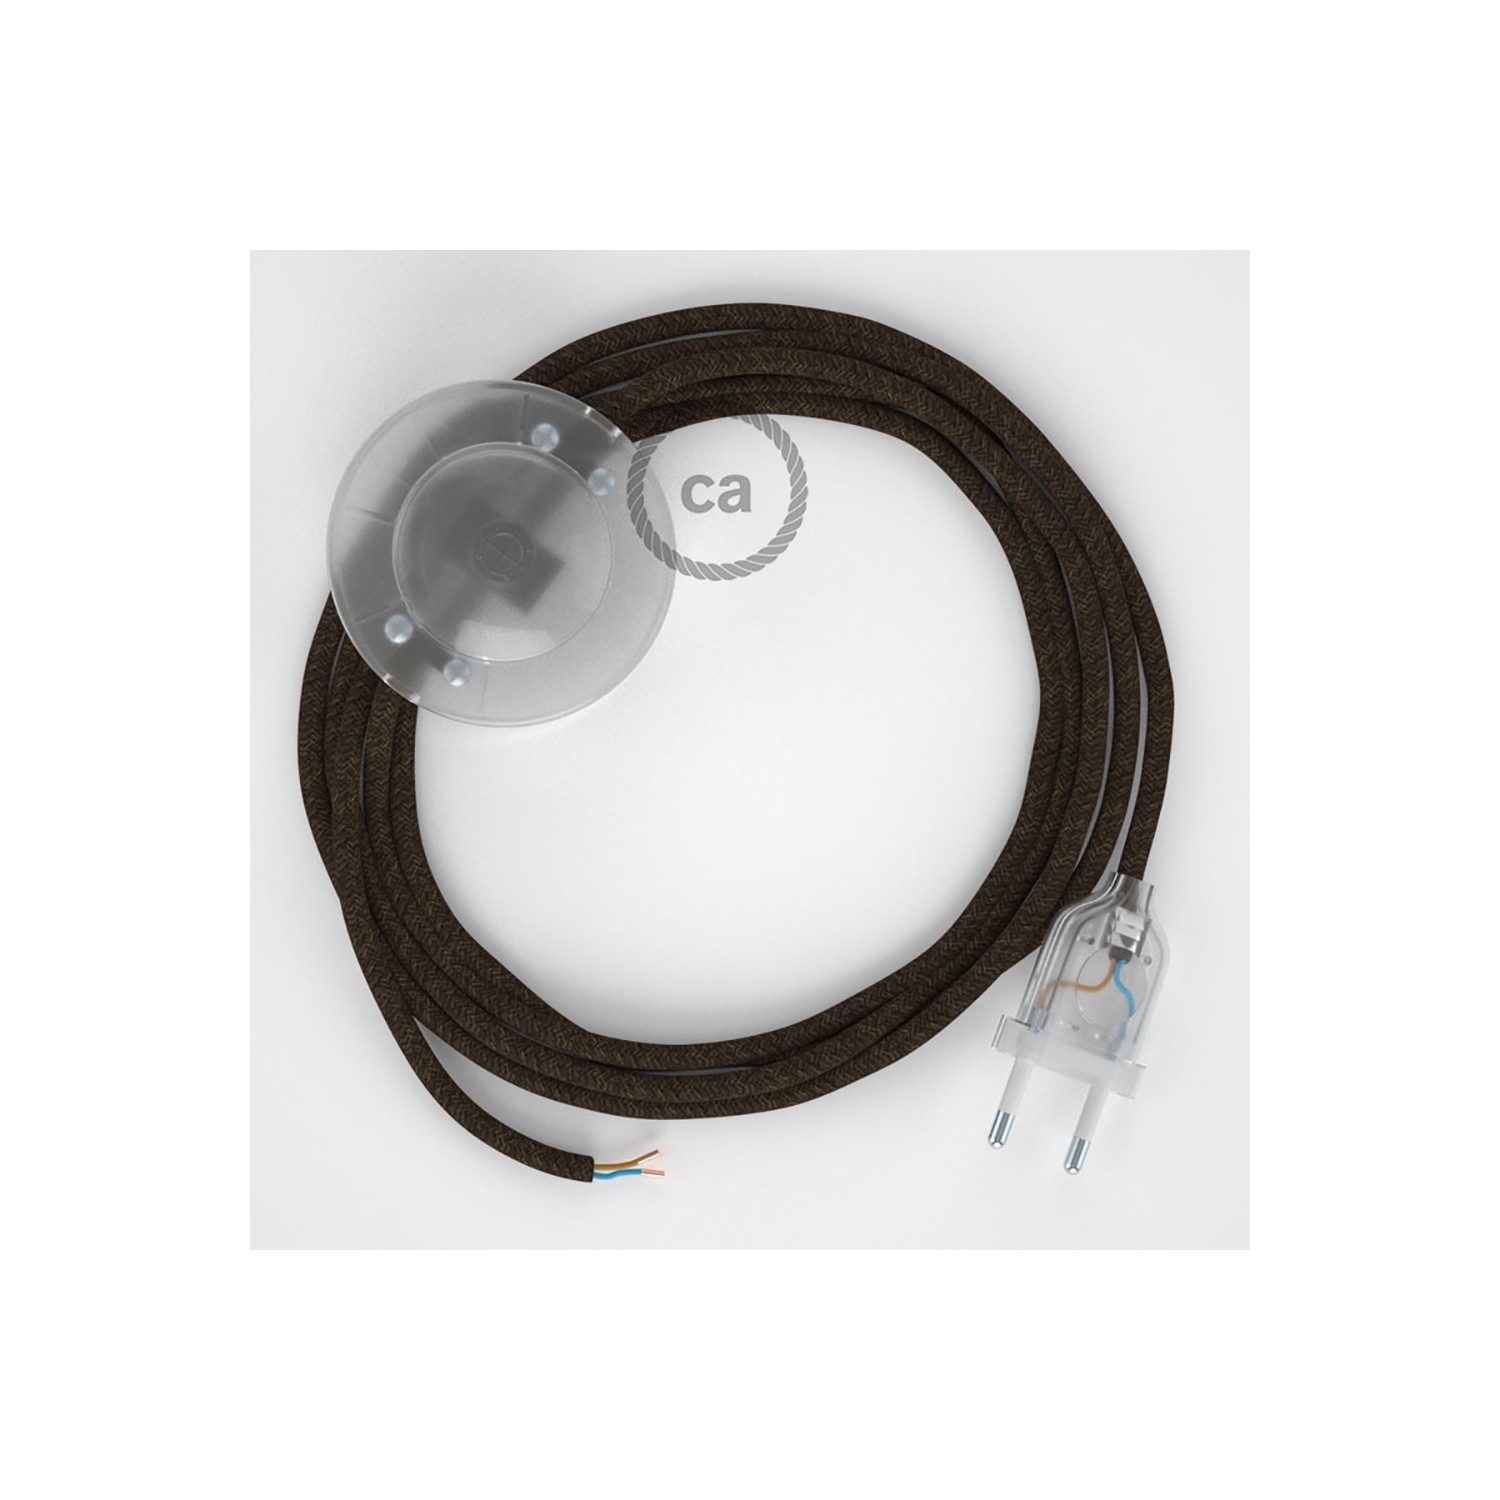 Napájací kábel pre podlahovú lampu, RN04 Hnedý ľanový 3 m. Vyberte si farbu zástrčky a vypínača.